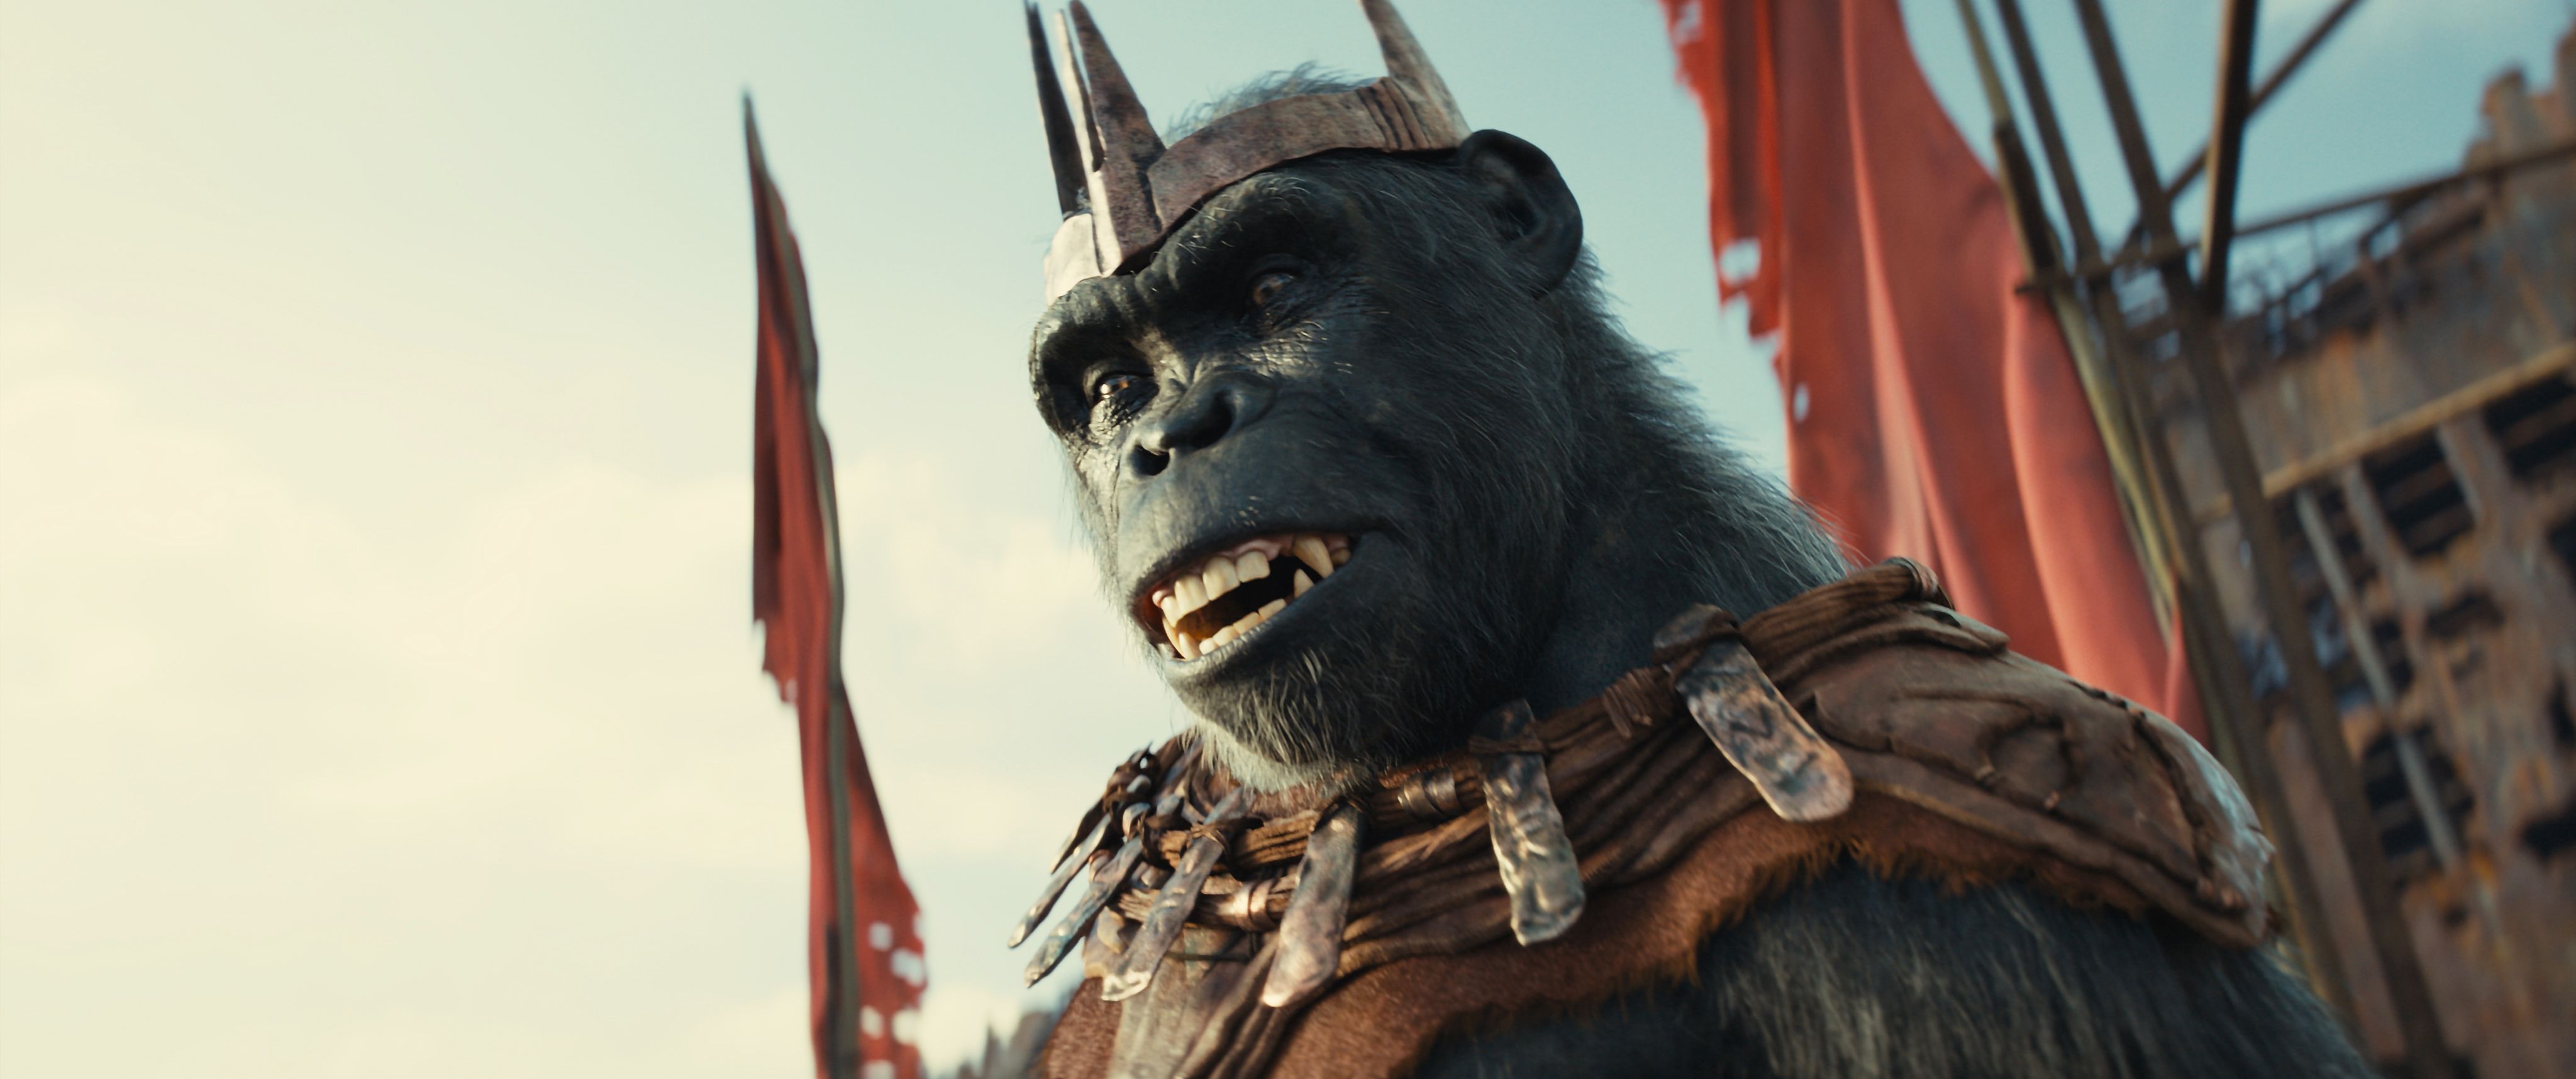 Первые реакции на «Королевство планеты обезьян» появились еще до выхода фильма в кино